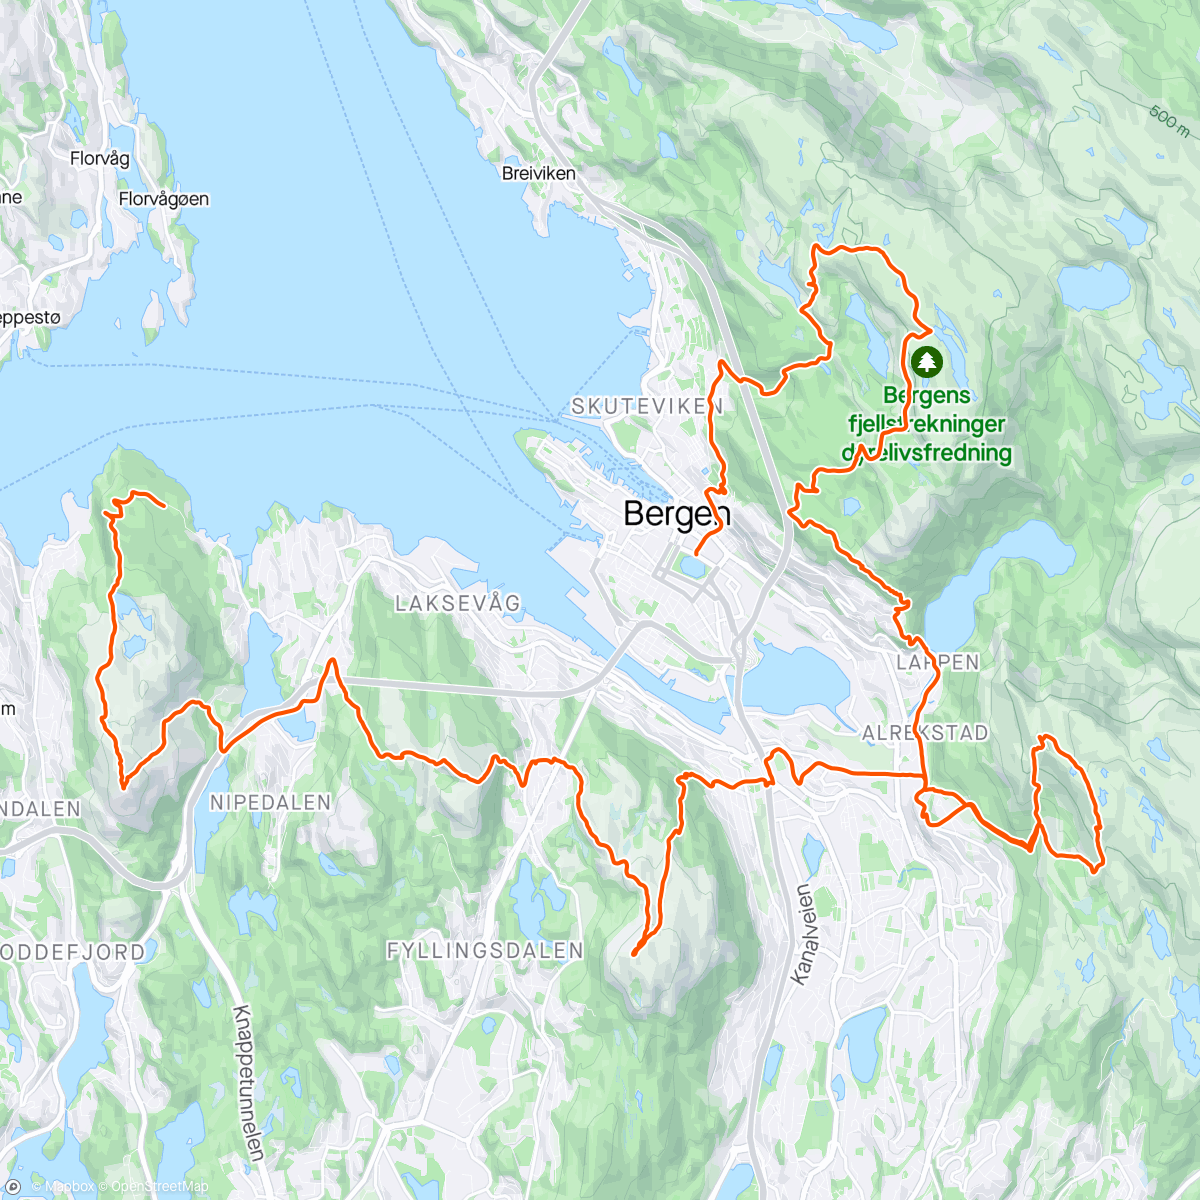 Mapa de la actividad, 7 fjell turen i Bergen i perfekt vær. Bildene sier sitt 😁